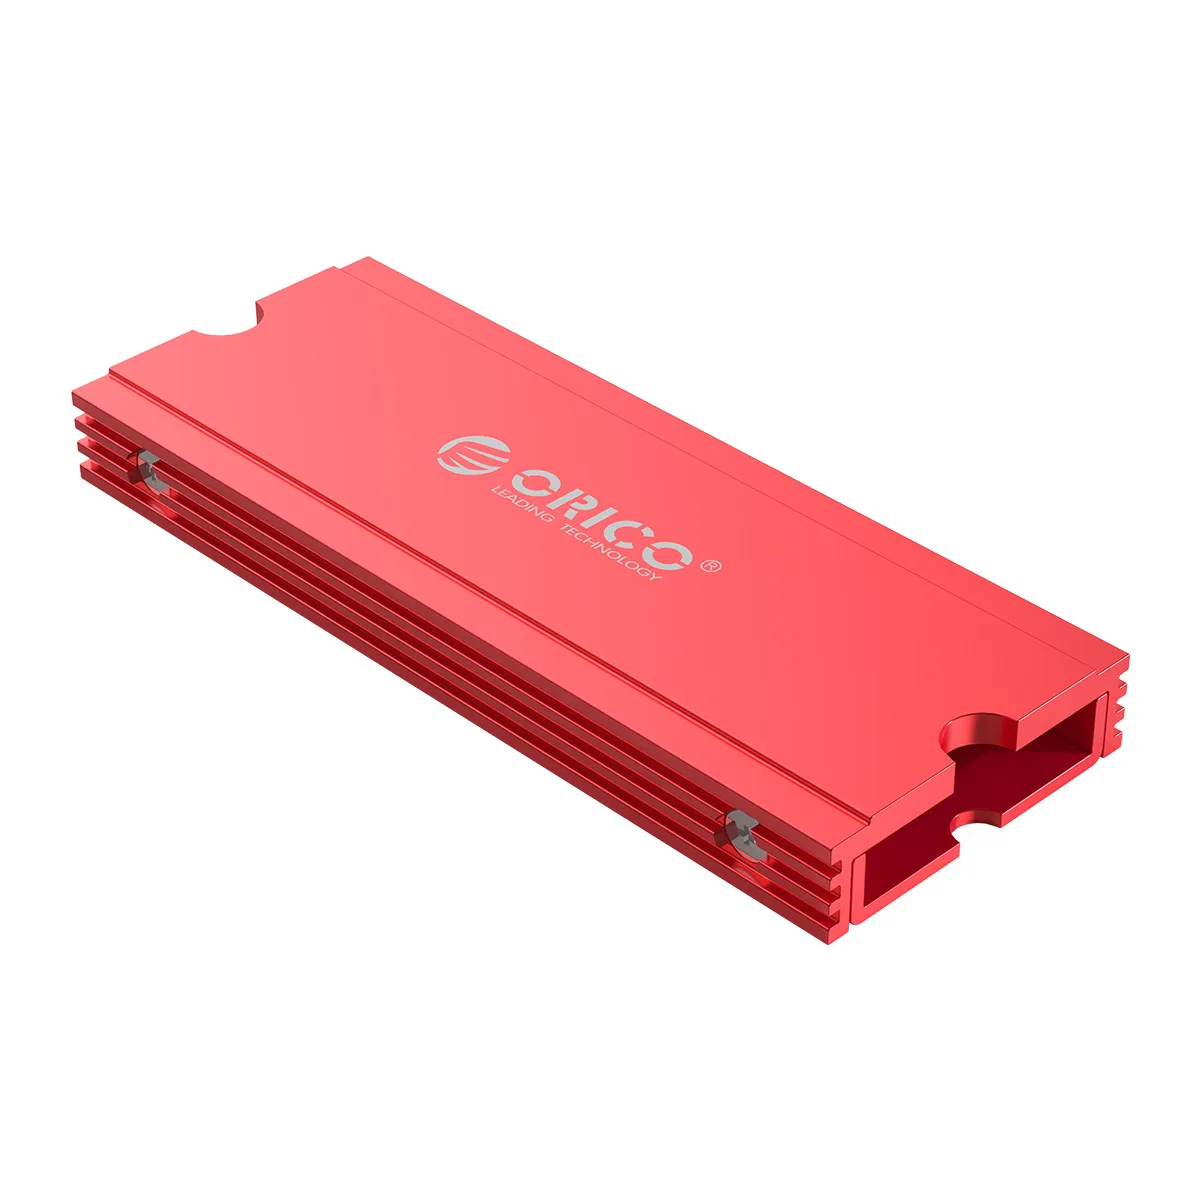 ORICO теплоотвод радиатор SSD Охлаждающий радиатор для M.2 NGFF 2280 PCI-E NVME радиатор SSD кулер